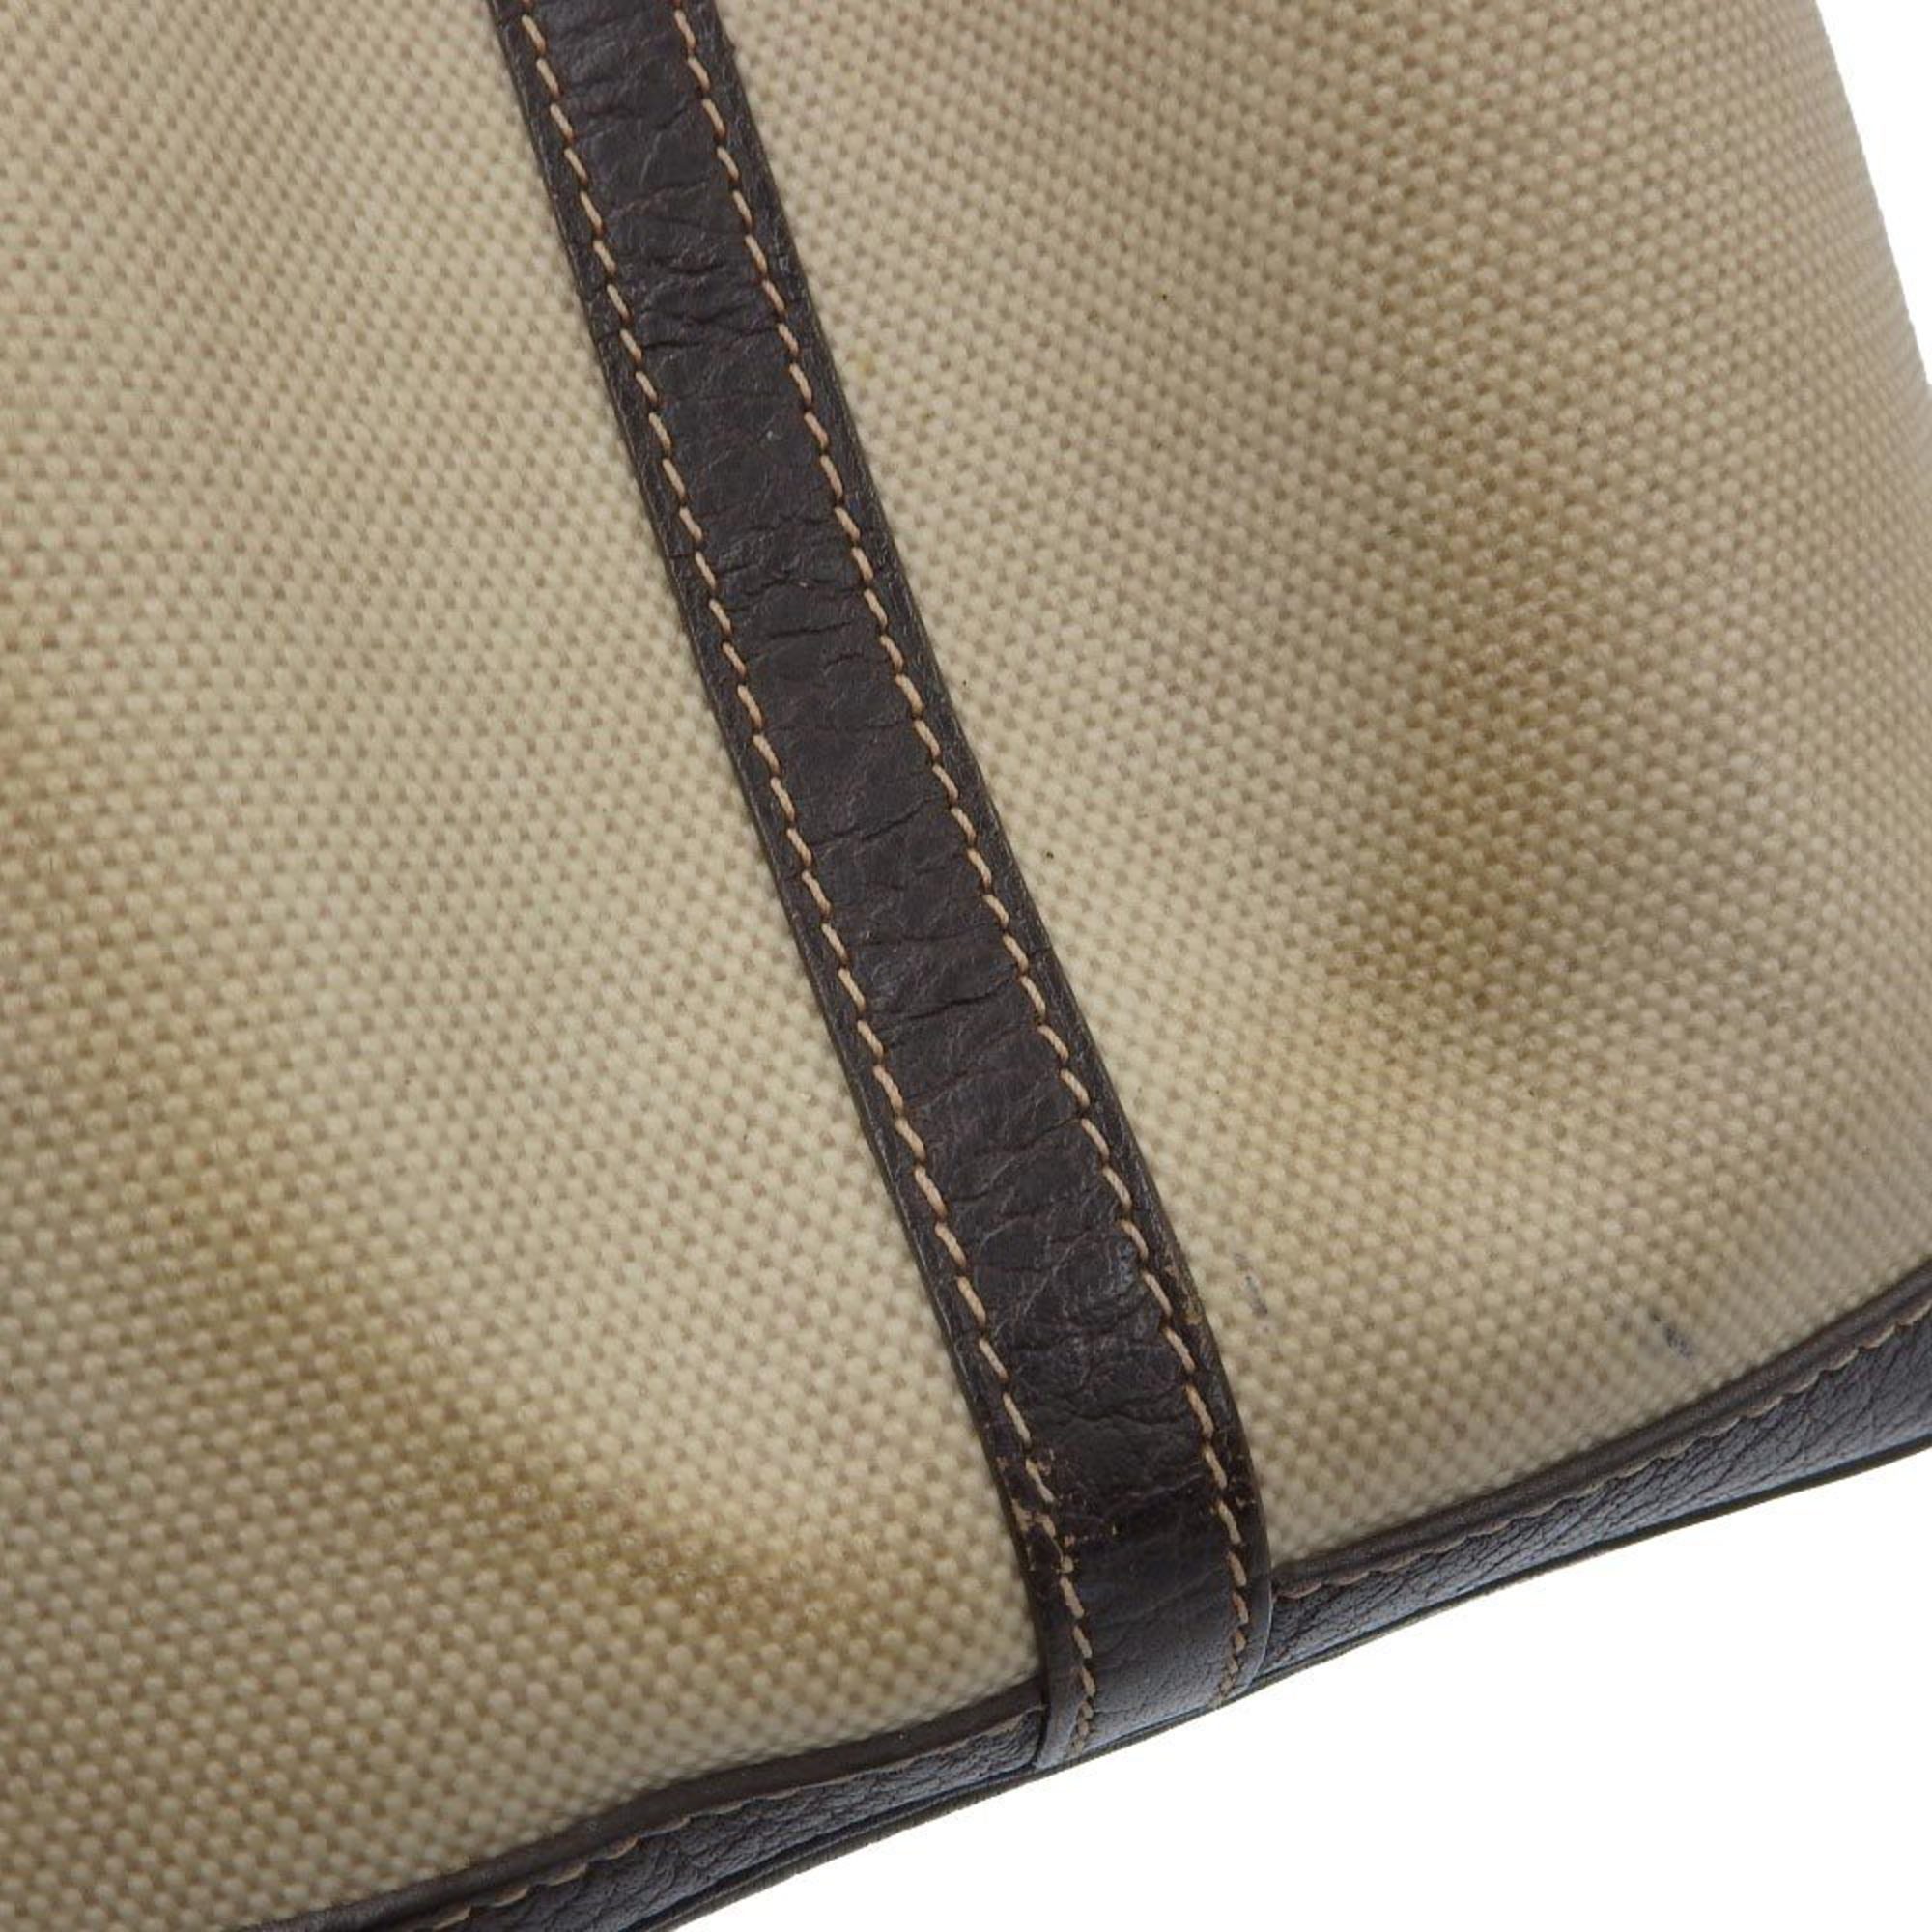 Hermes HERMES Garden 36 PM □F engraved handbag tote bag toile h leather brown beige